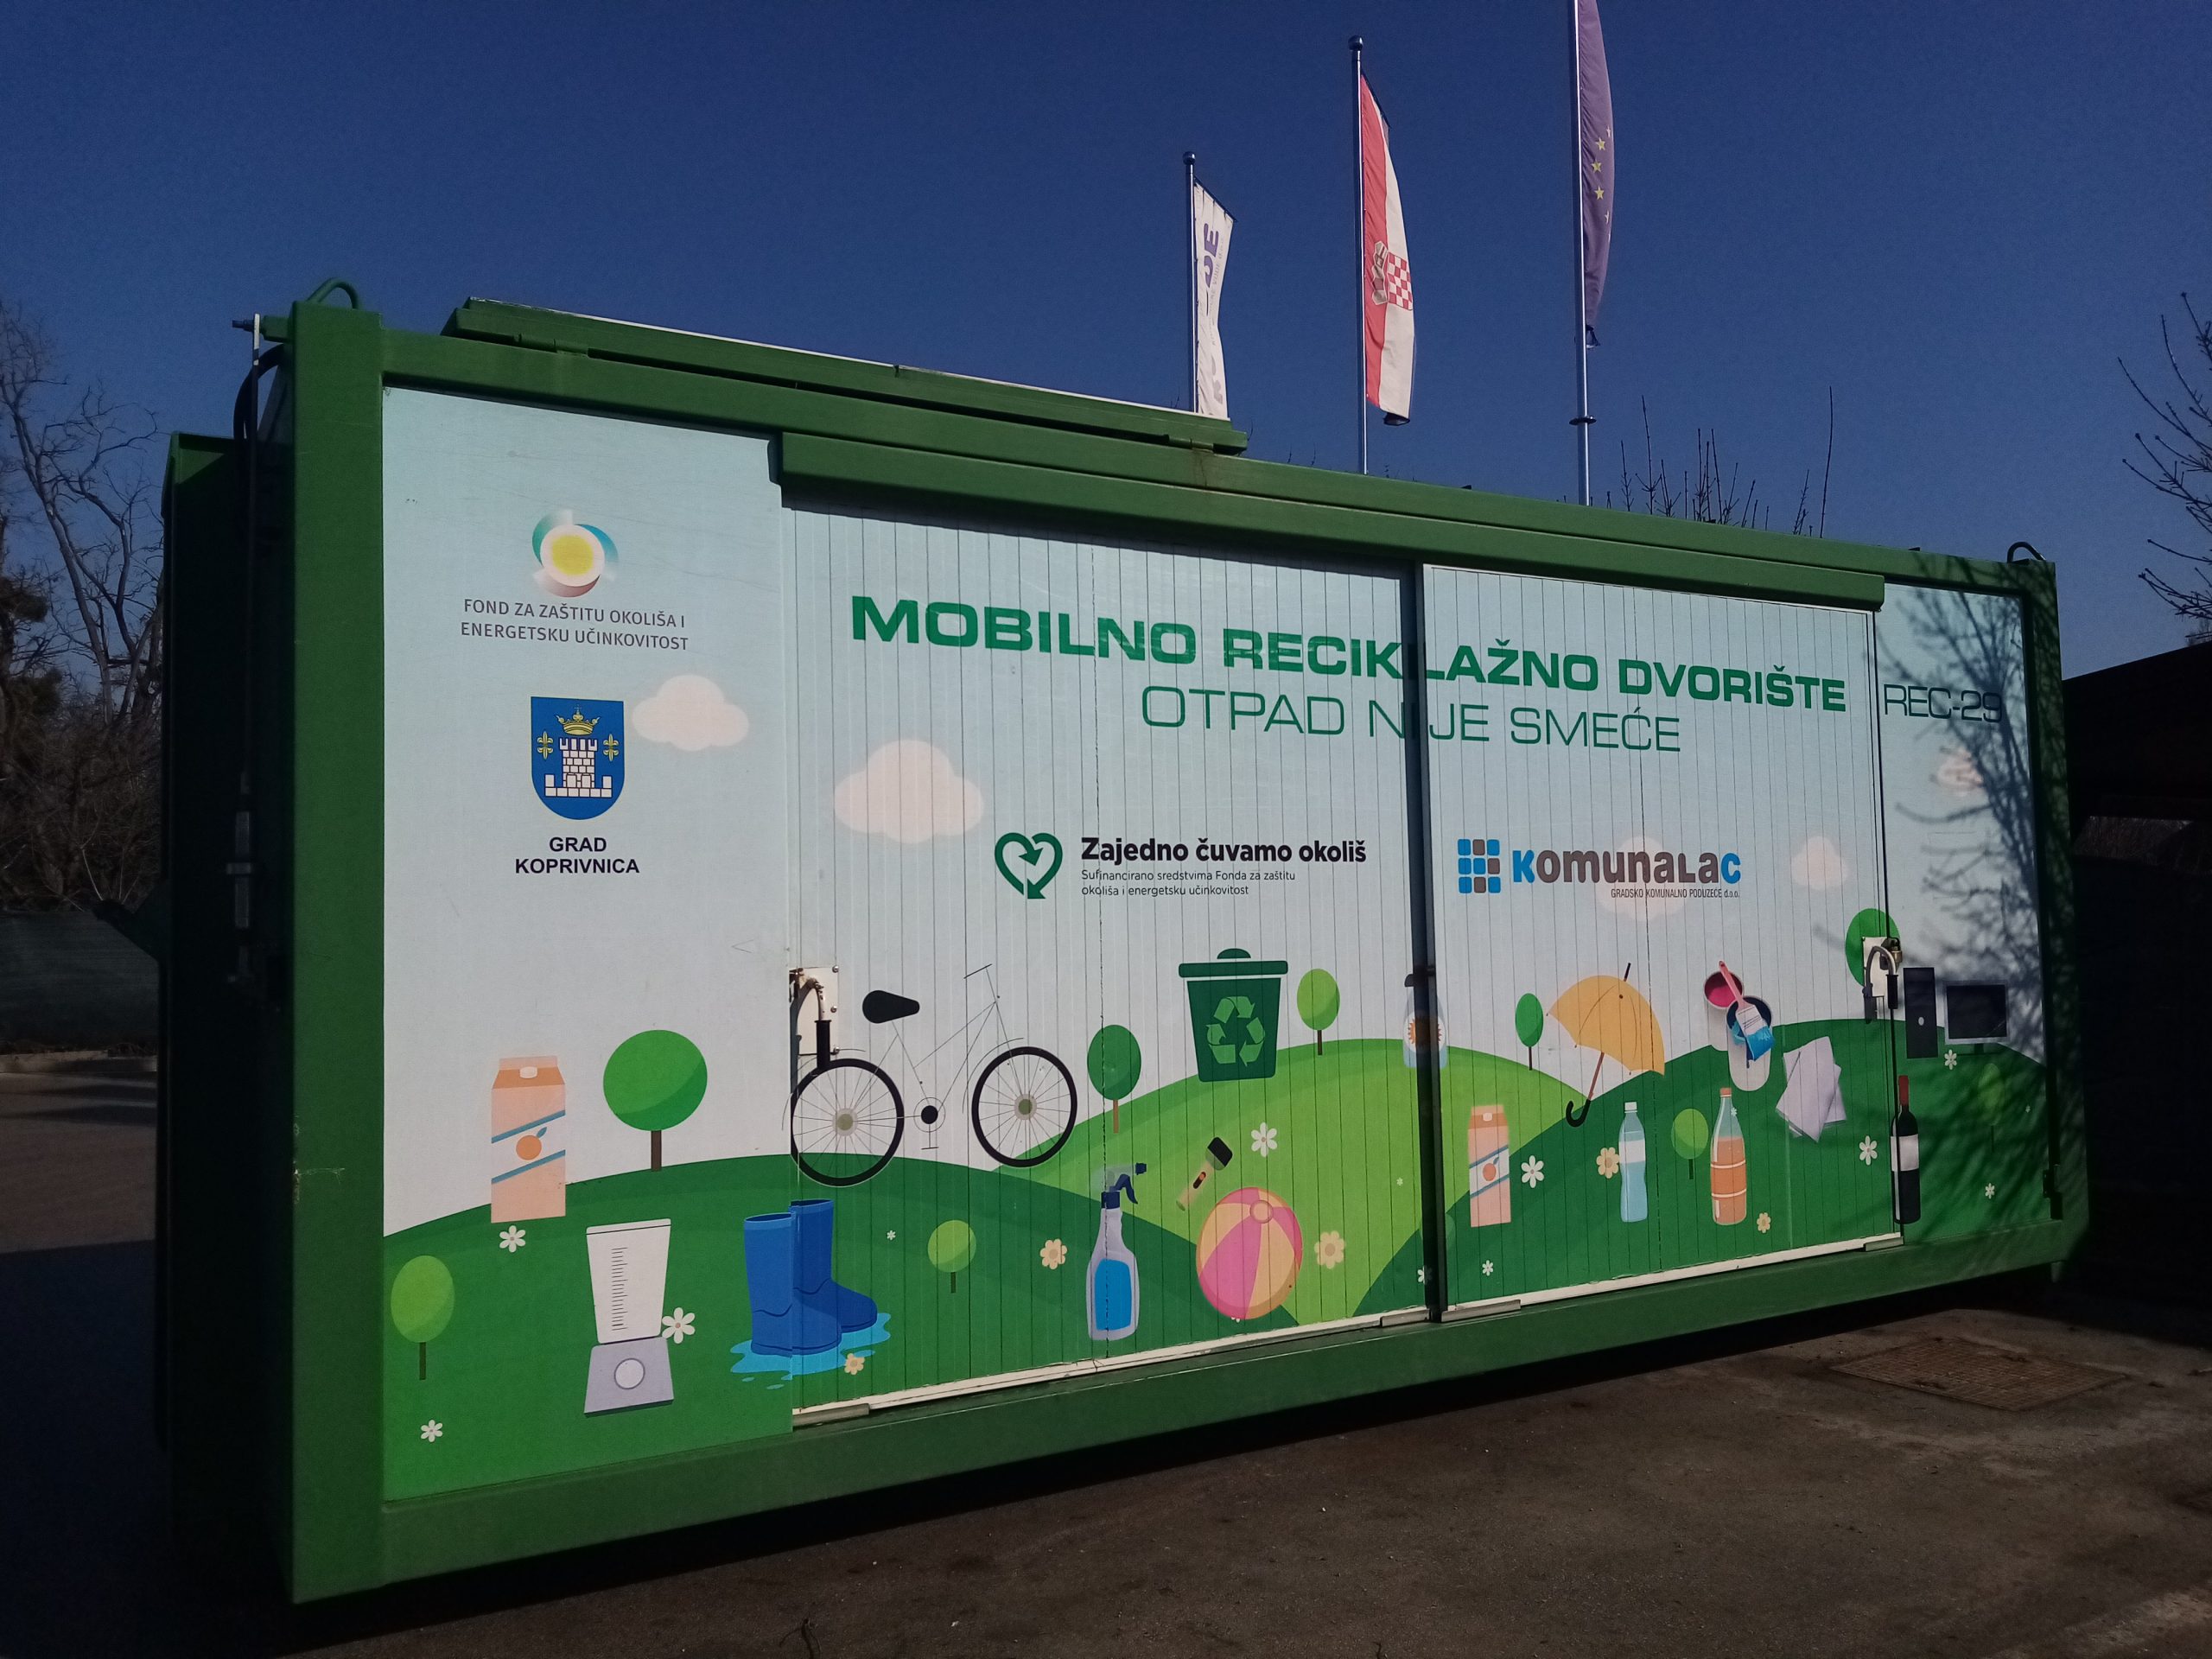 Mobilno reciklažno dvorište u četvrtak, 26. svibnja, nalazit će se u Reki kod vatrogasnog doma